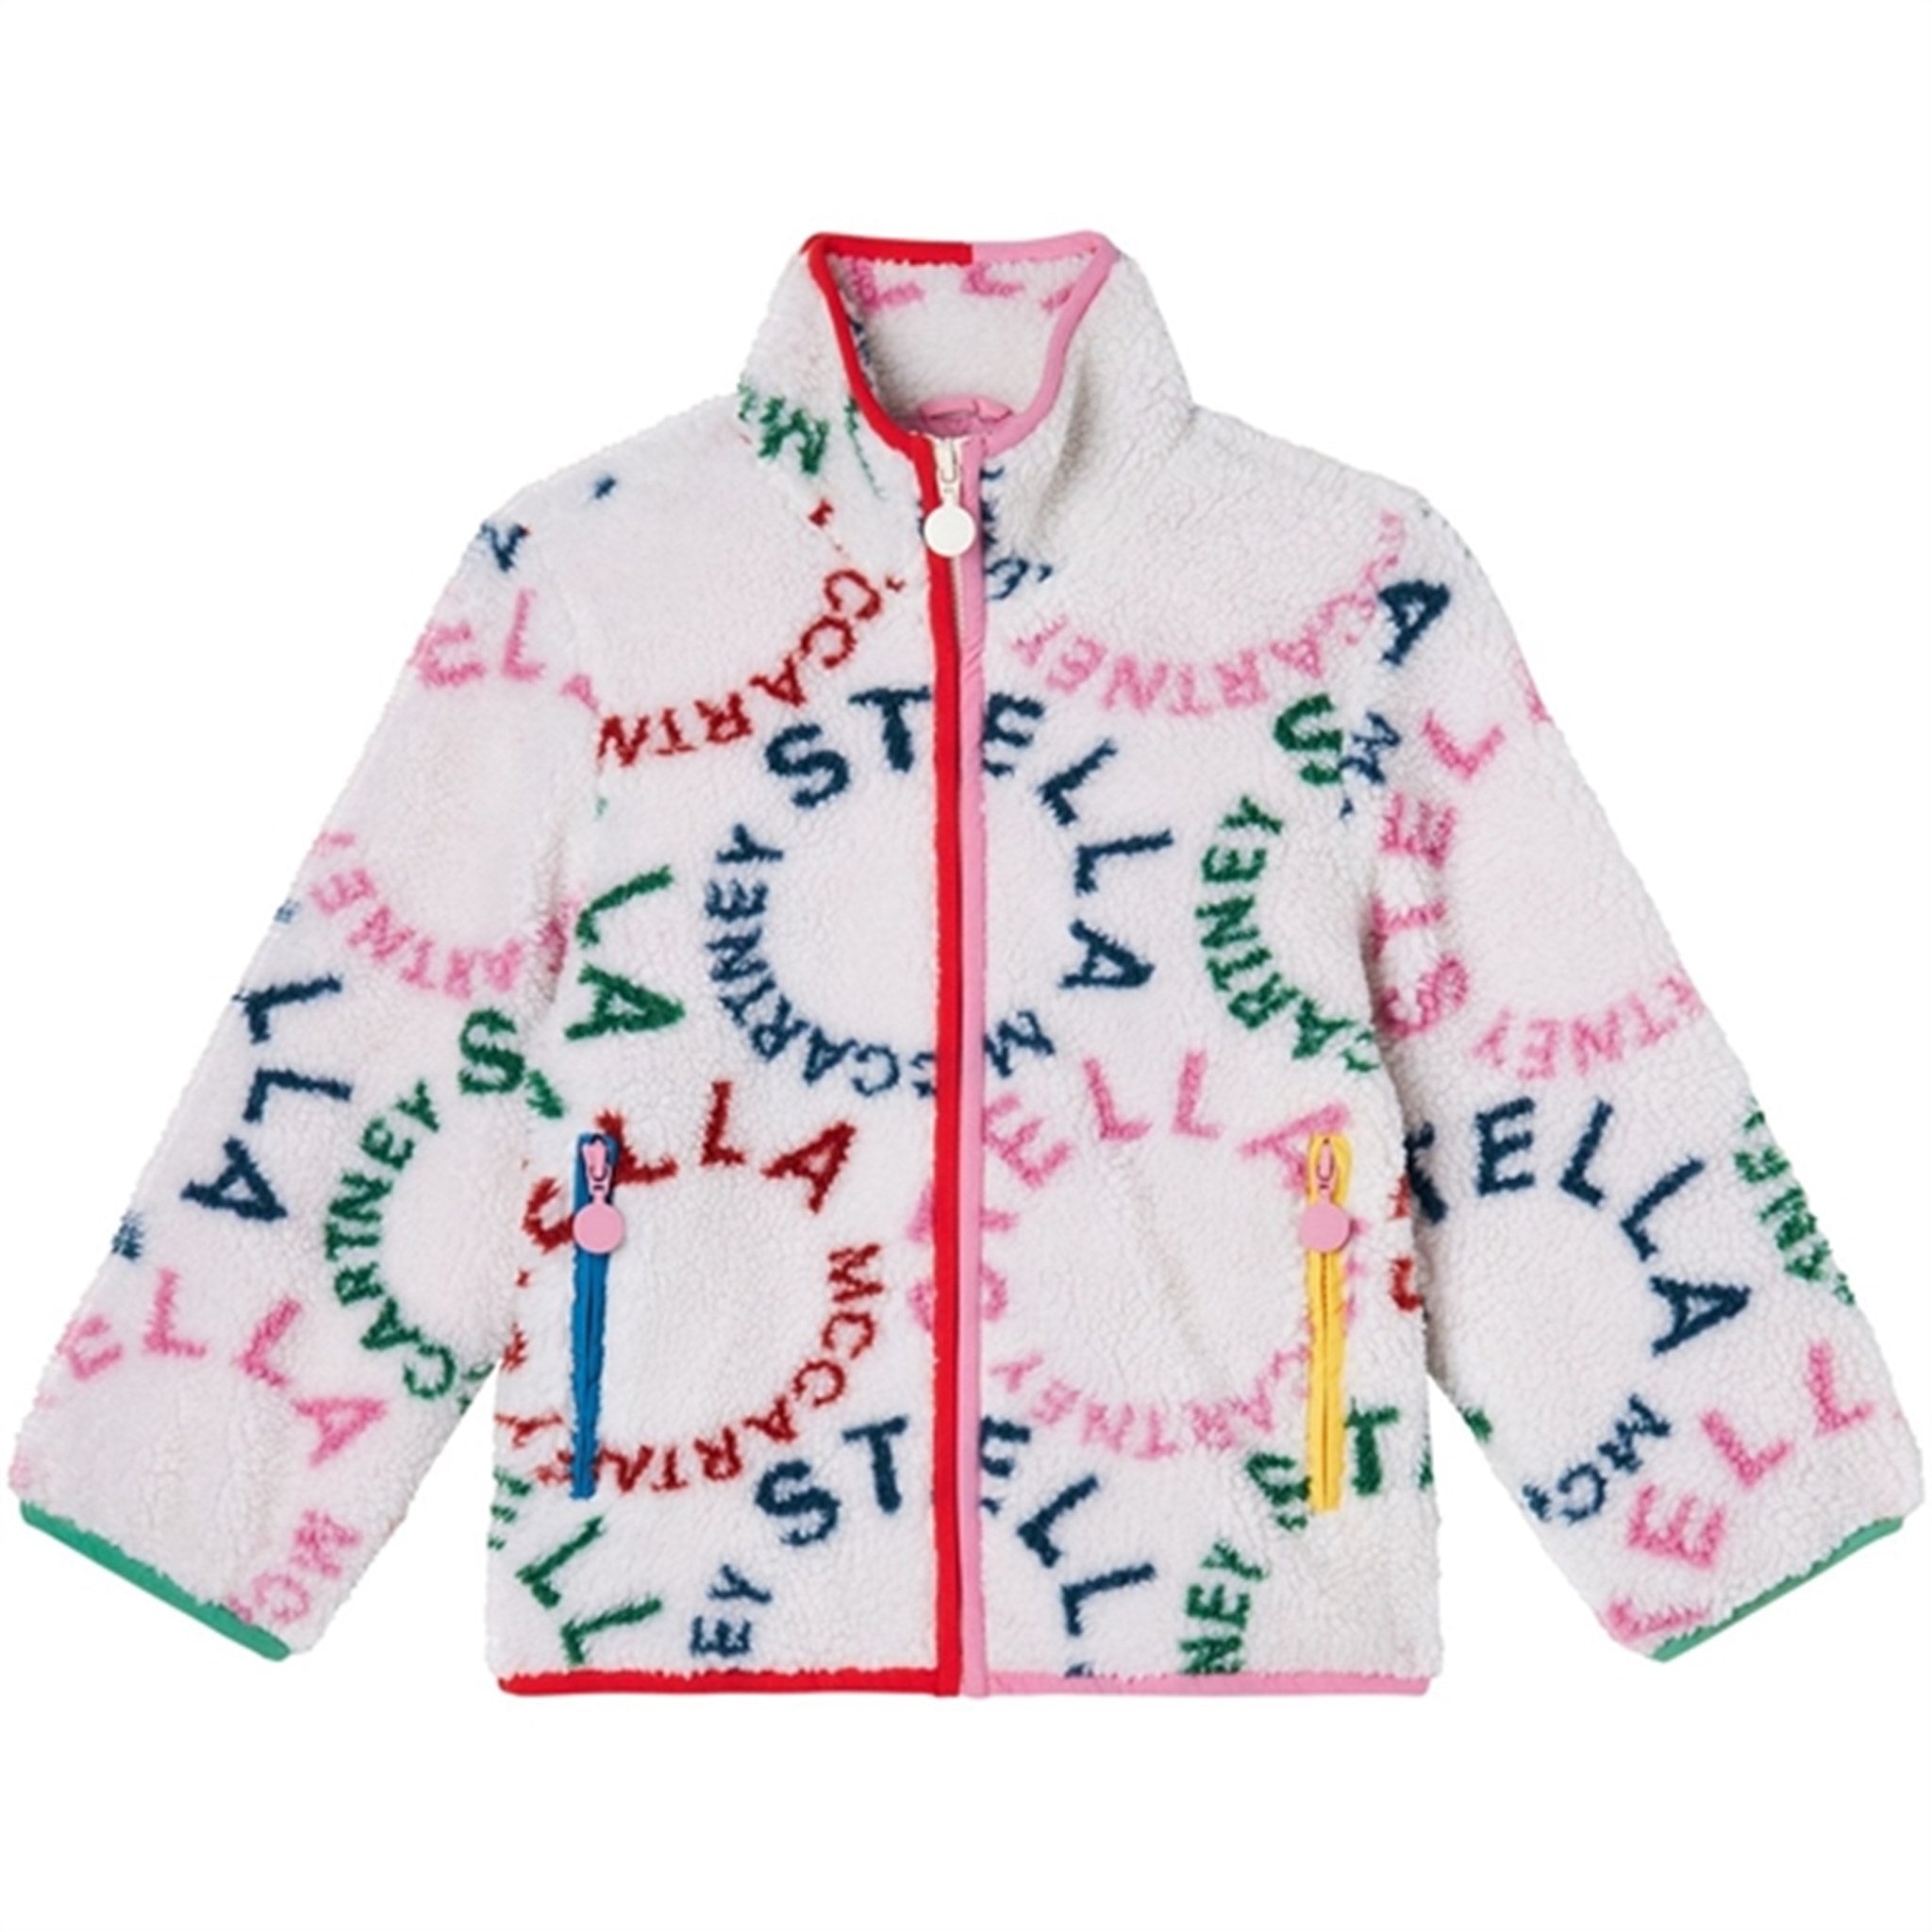 Stella McCartney Ivory/Colourful Jacket